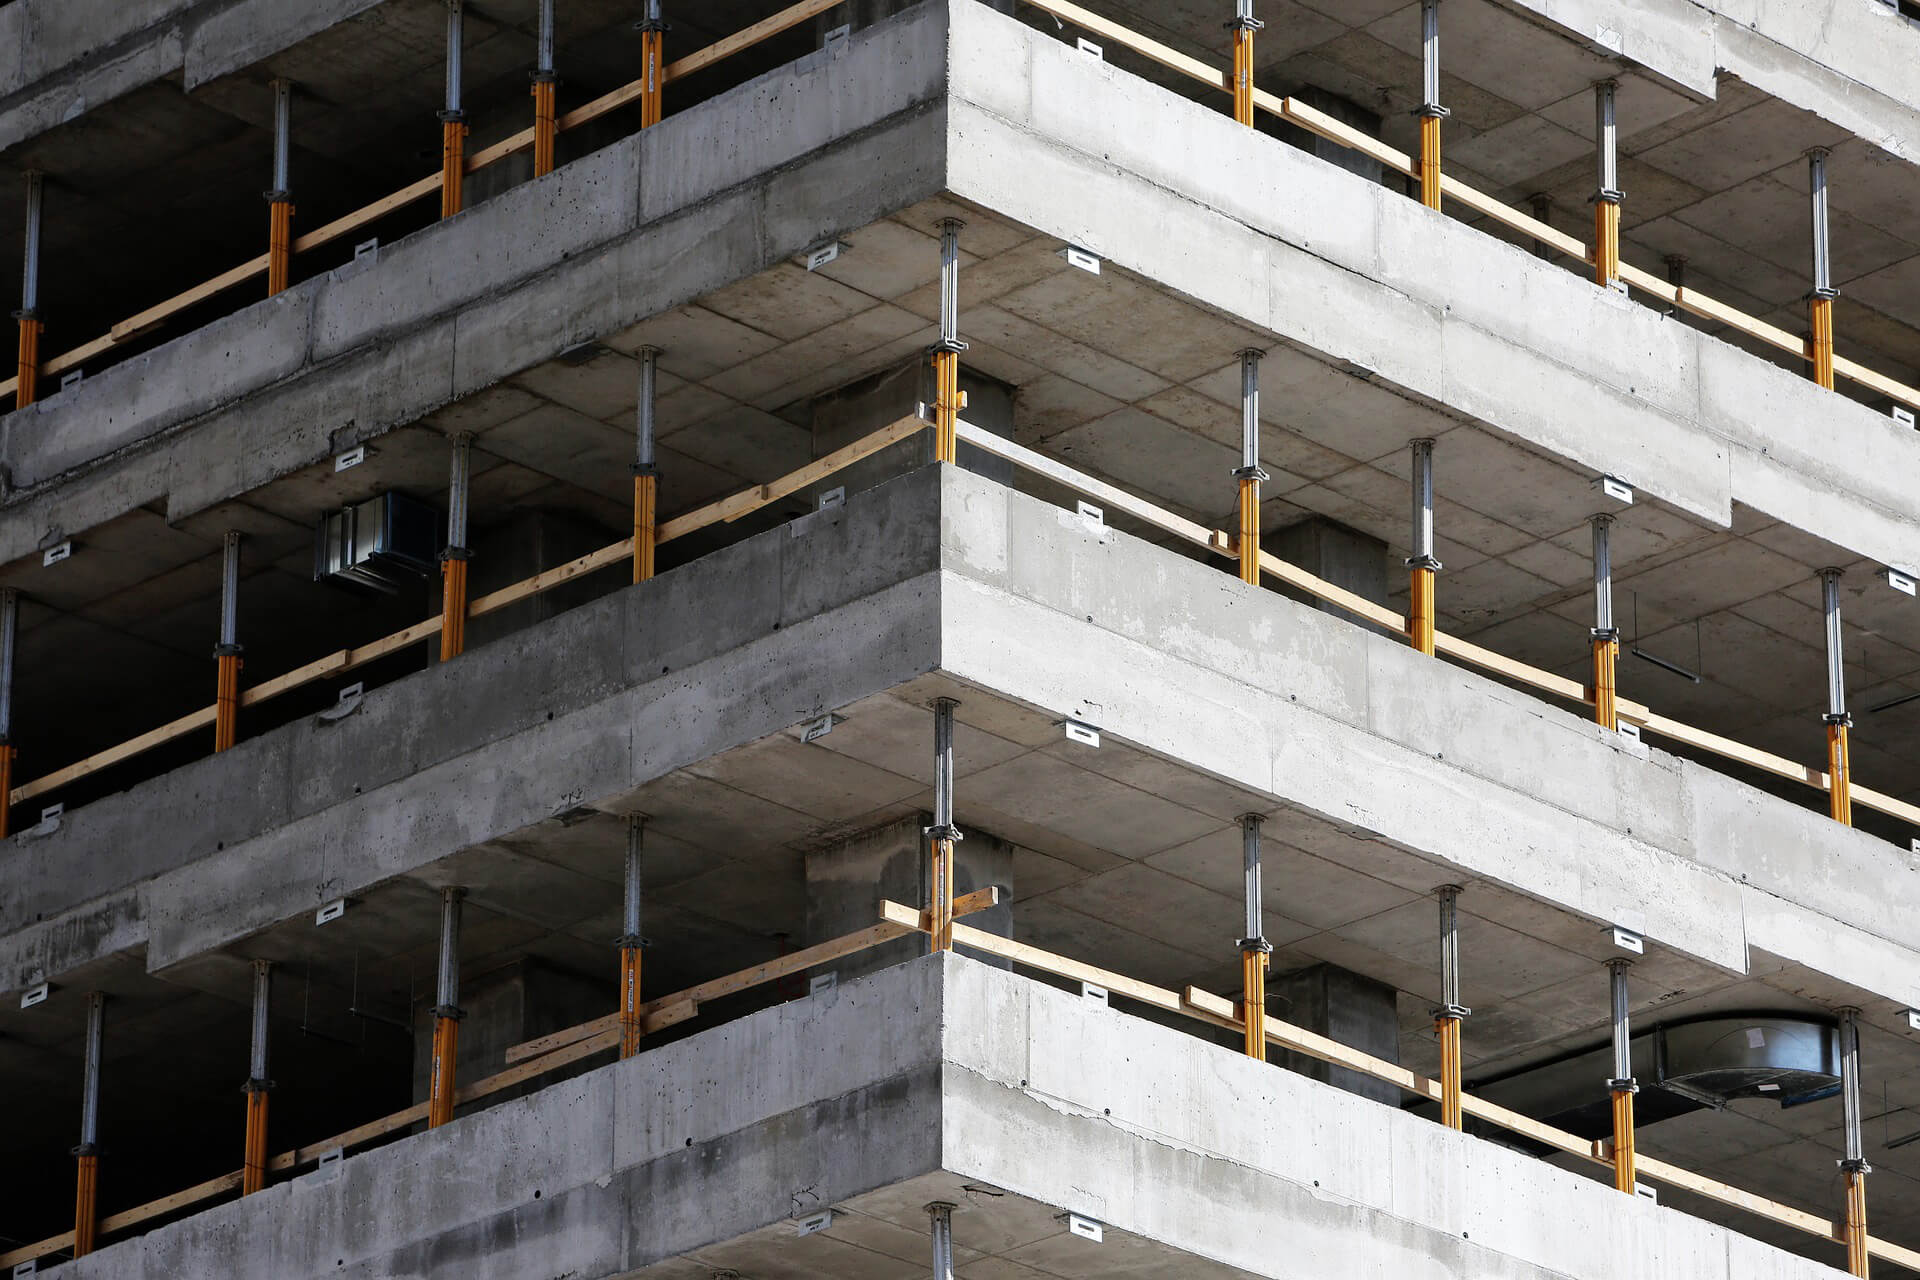 Unsere Leistungen | DENIS Bau - Leistung Bauunternehmen - Gebäude im Rohbau mit Stützpfeilern